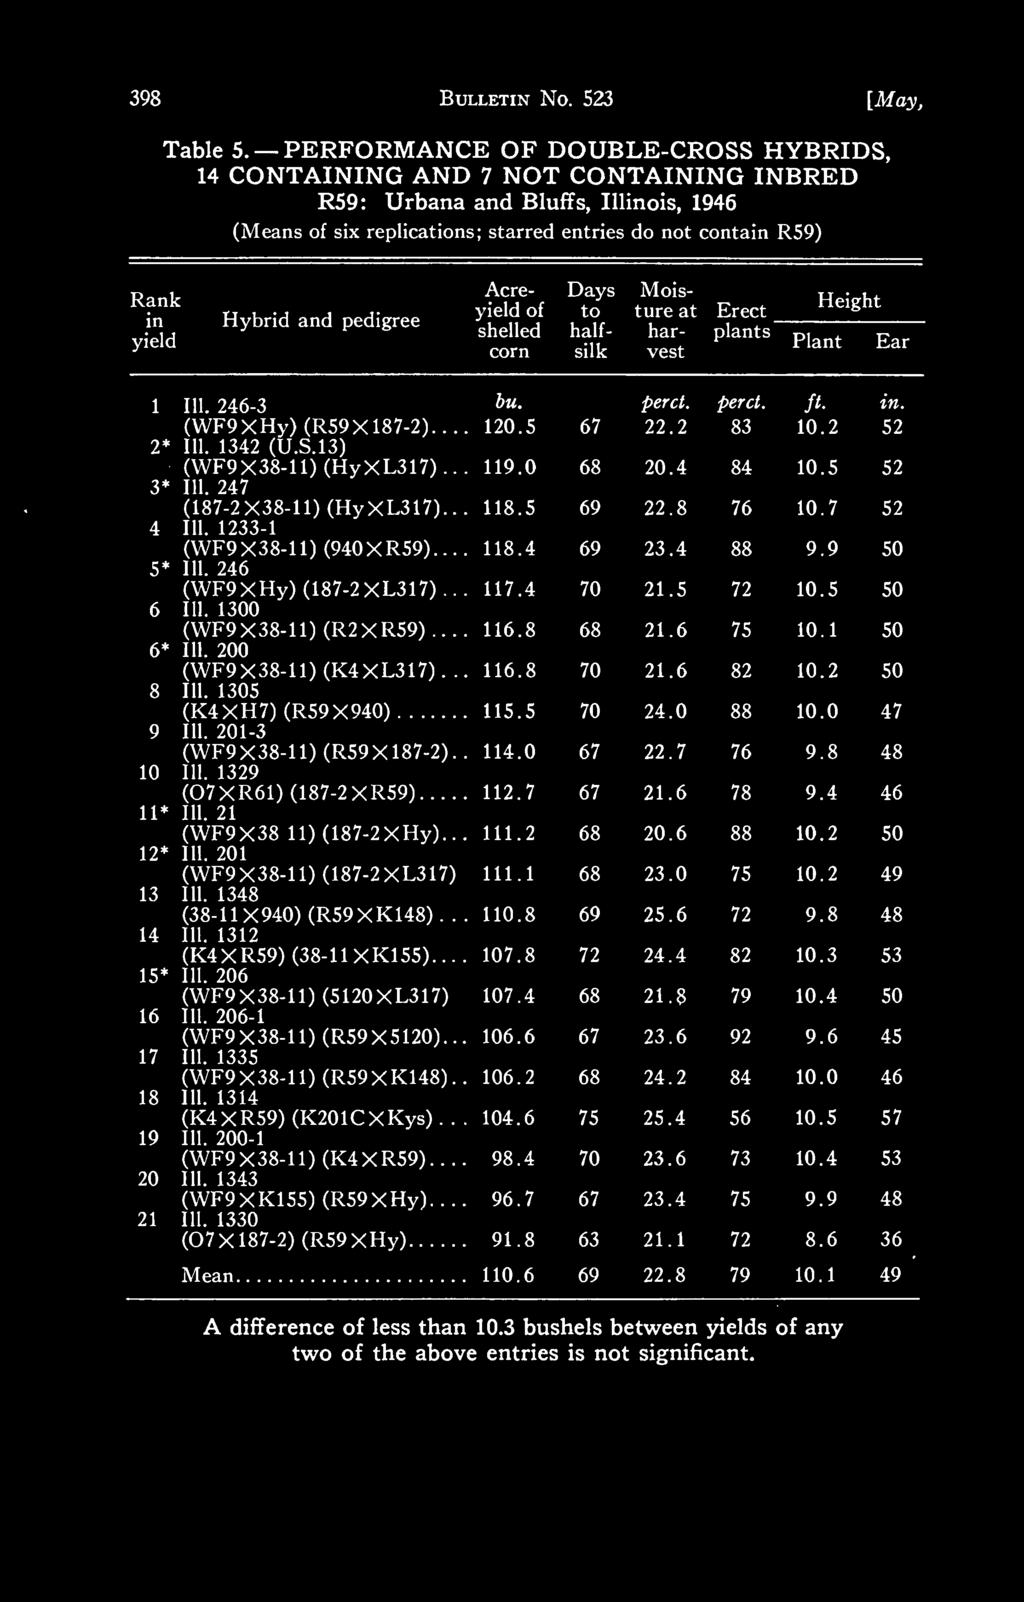 Illinois, 1946 Table 5.